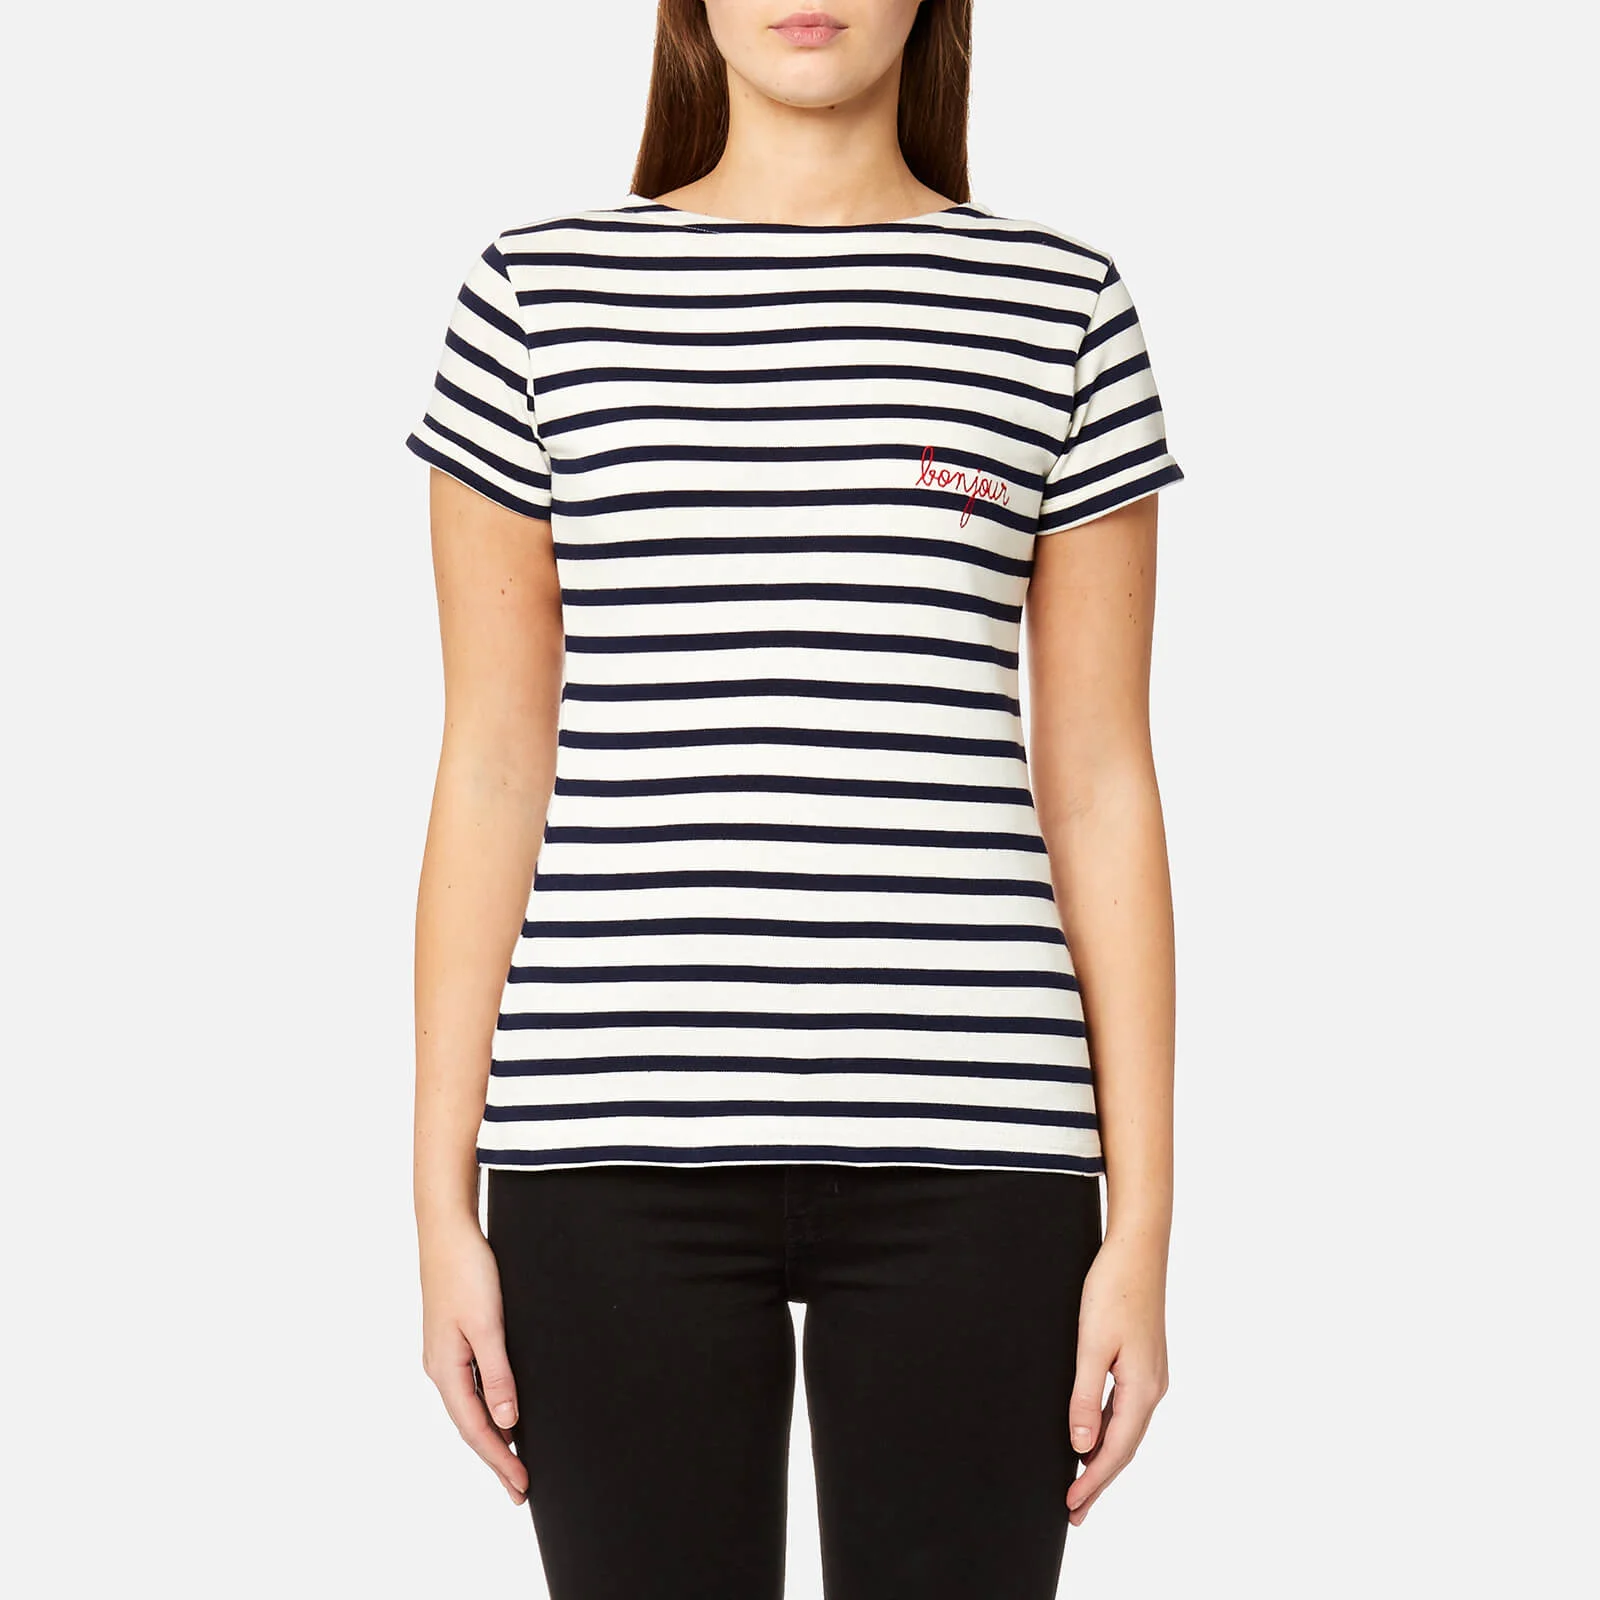 Maison Labiche Women's Mariniere Bonjour T-Shirt - Stripe Image 1